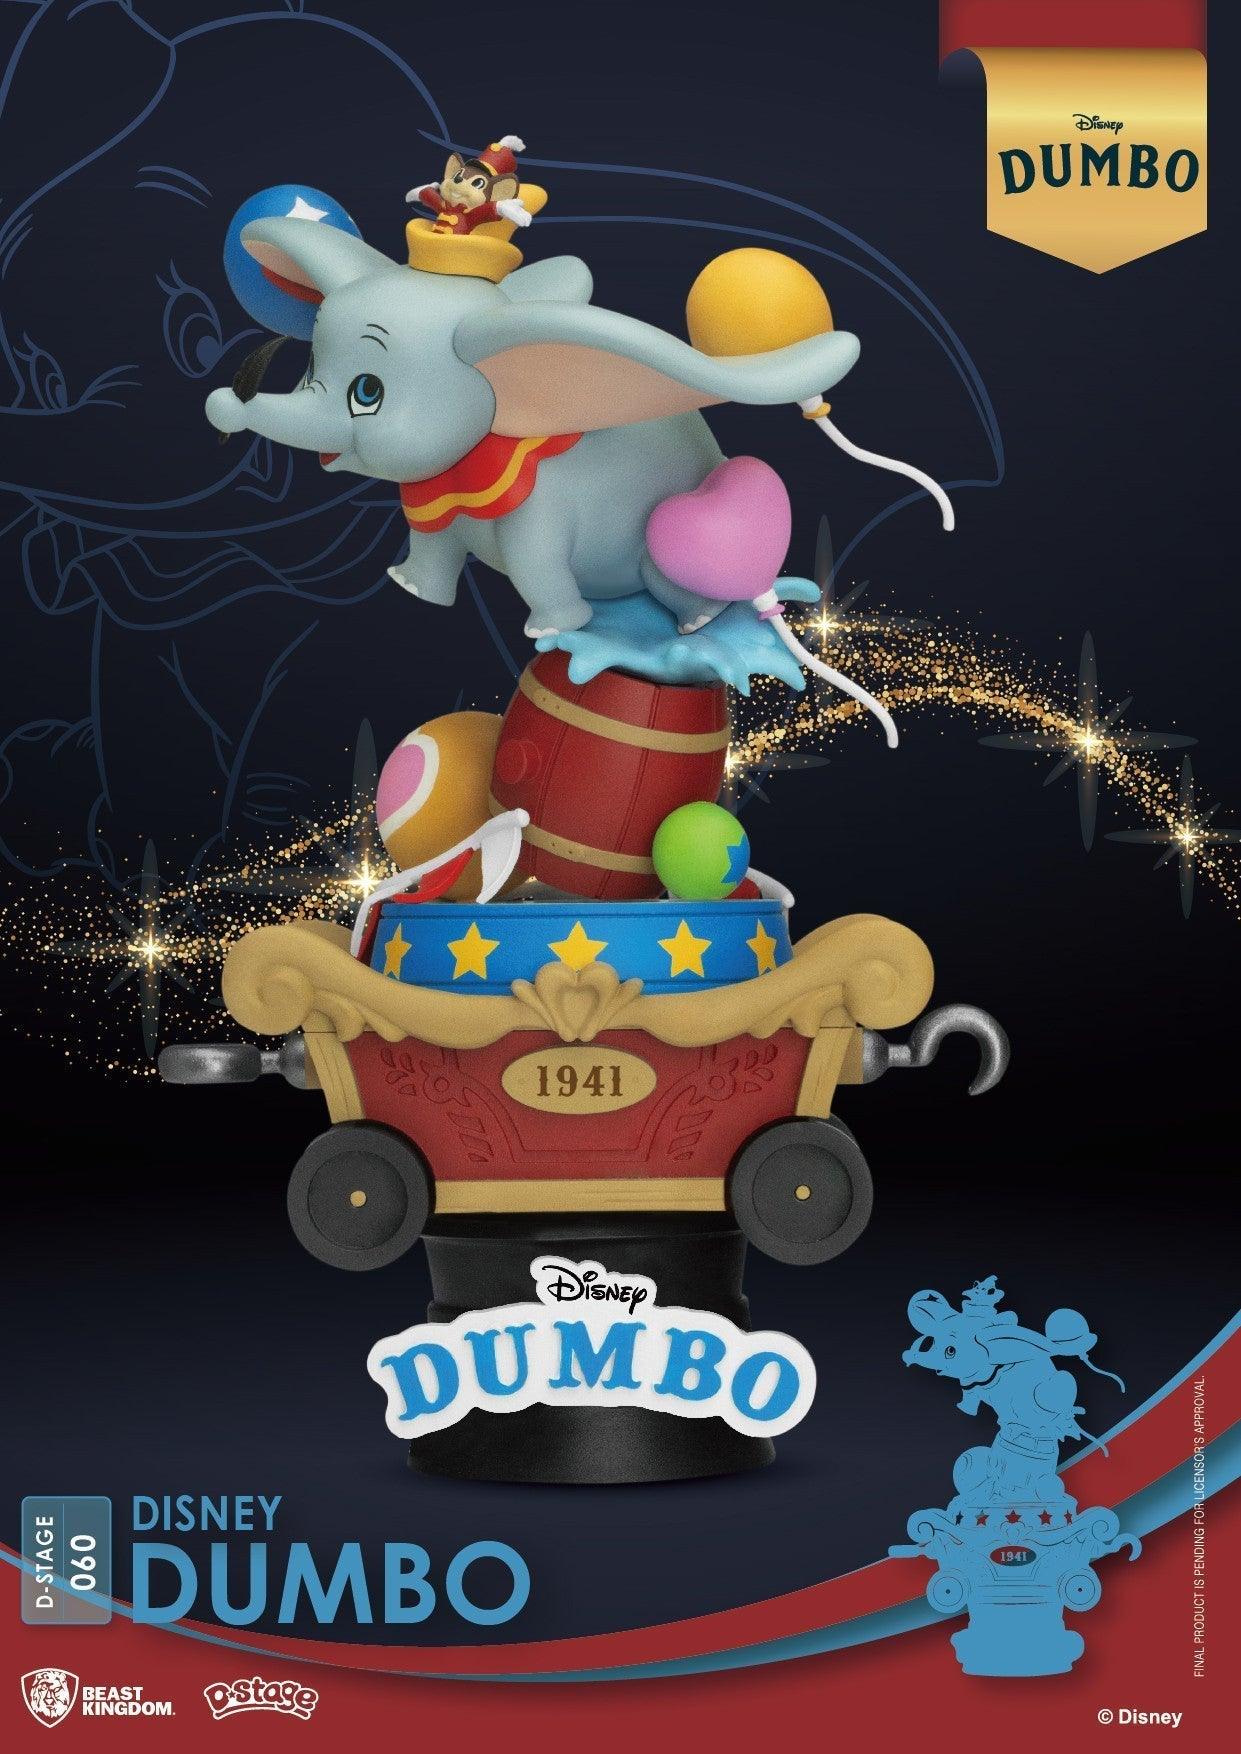 VR-87652 Beast Kingdom D Stage Disney Classic Dumbo - Beast Kingdom - Titan Pop Culture